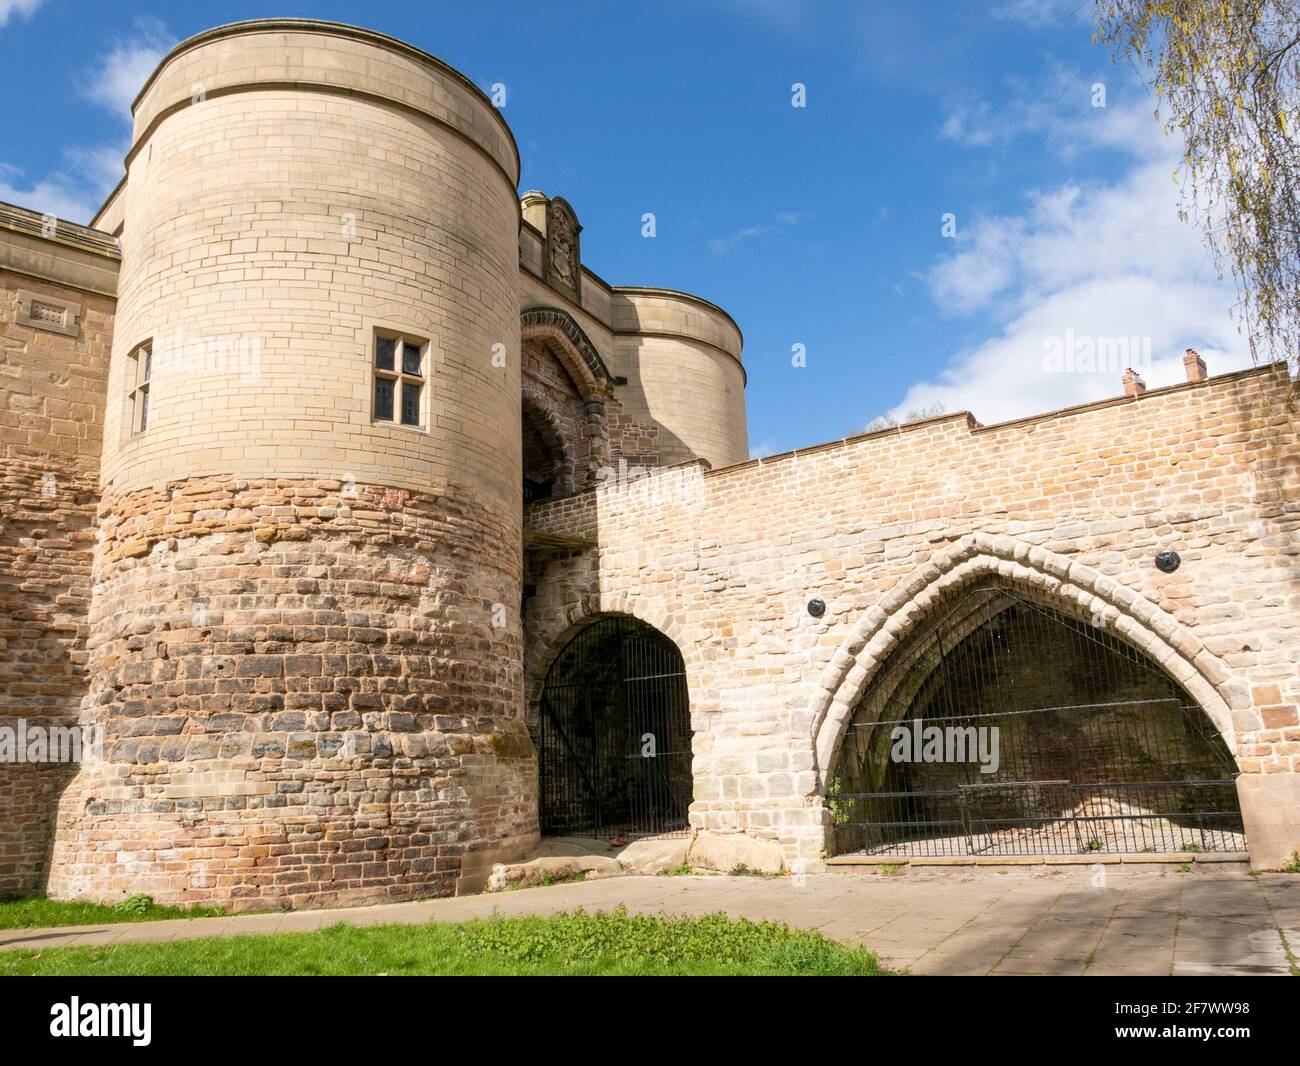 Château de Nottingham, porte d'entrée extérieure, pont et murs souterrains Nottingham Notinghamshire east midlands Angleterre Royaume-Uni GB Europe Banque D'Images